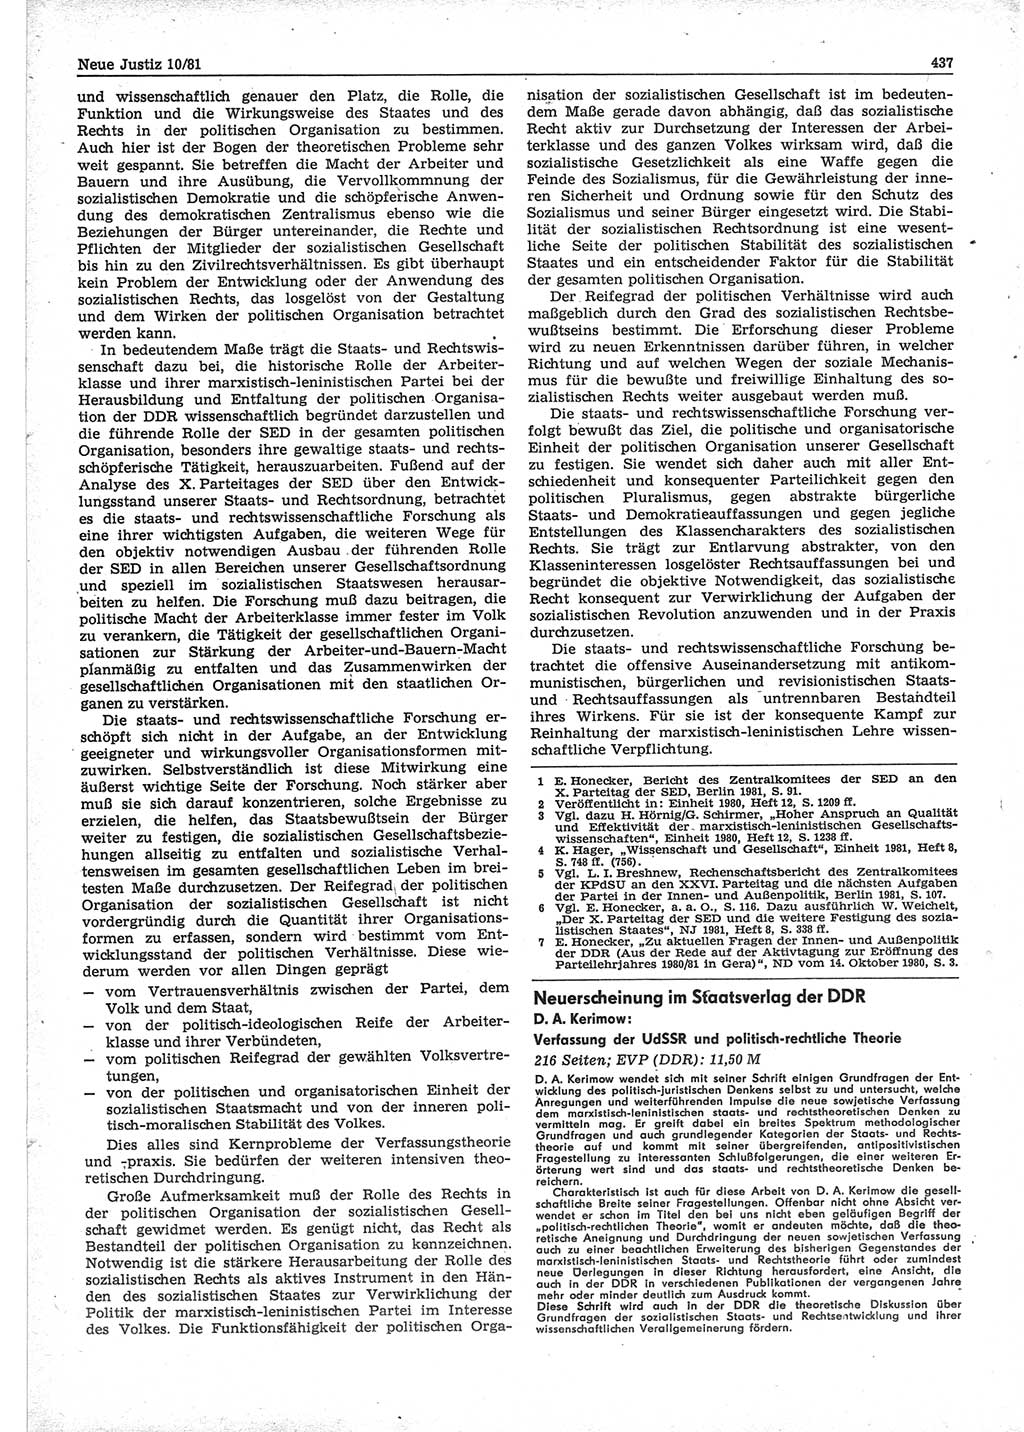 Neue Justiz (NJ), Zeitschrift für sozialistisches Recht und Gesetzlichkeit [Deutsche Demokratische Republik (DDR)], 35. Jahrgang 1981, Seite 437 (NJ DDR 1981, S. 437)